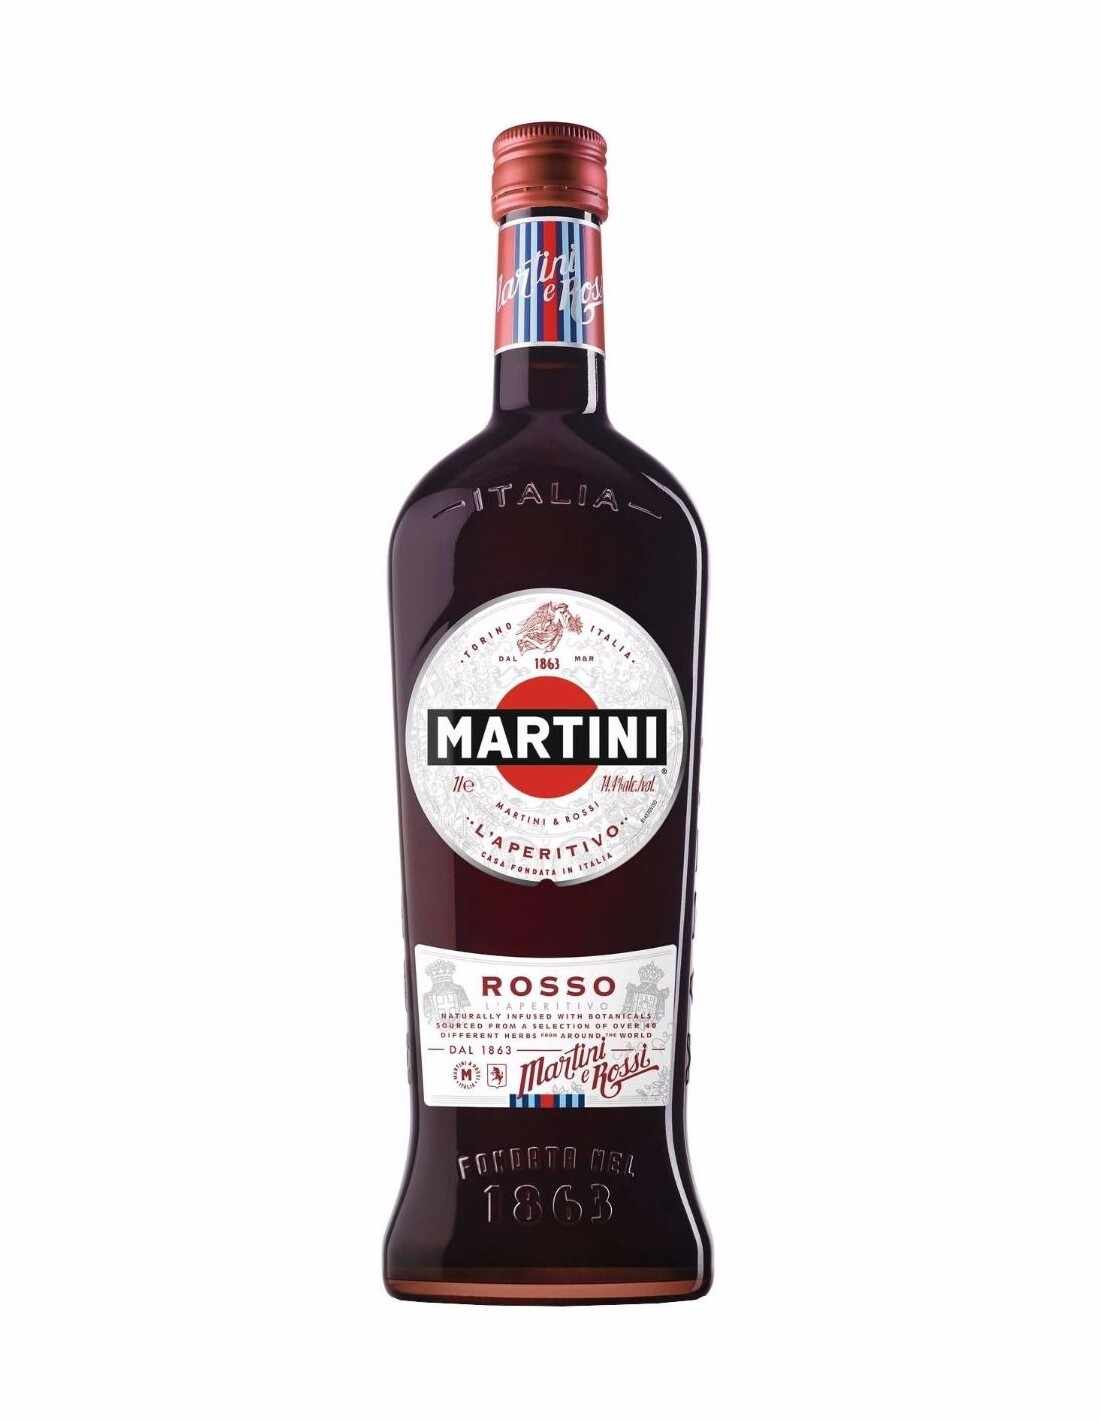 Aperitiv Martini Rosso, 14.4% alc., 1L, Italia